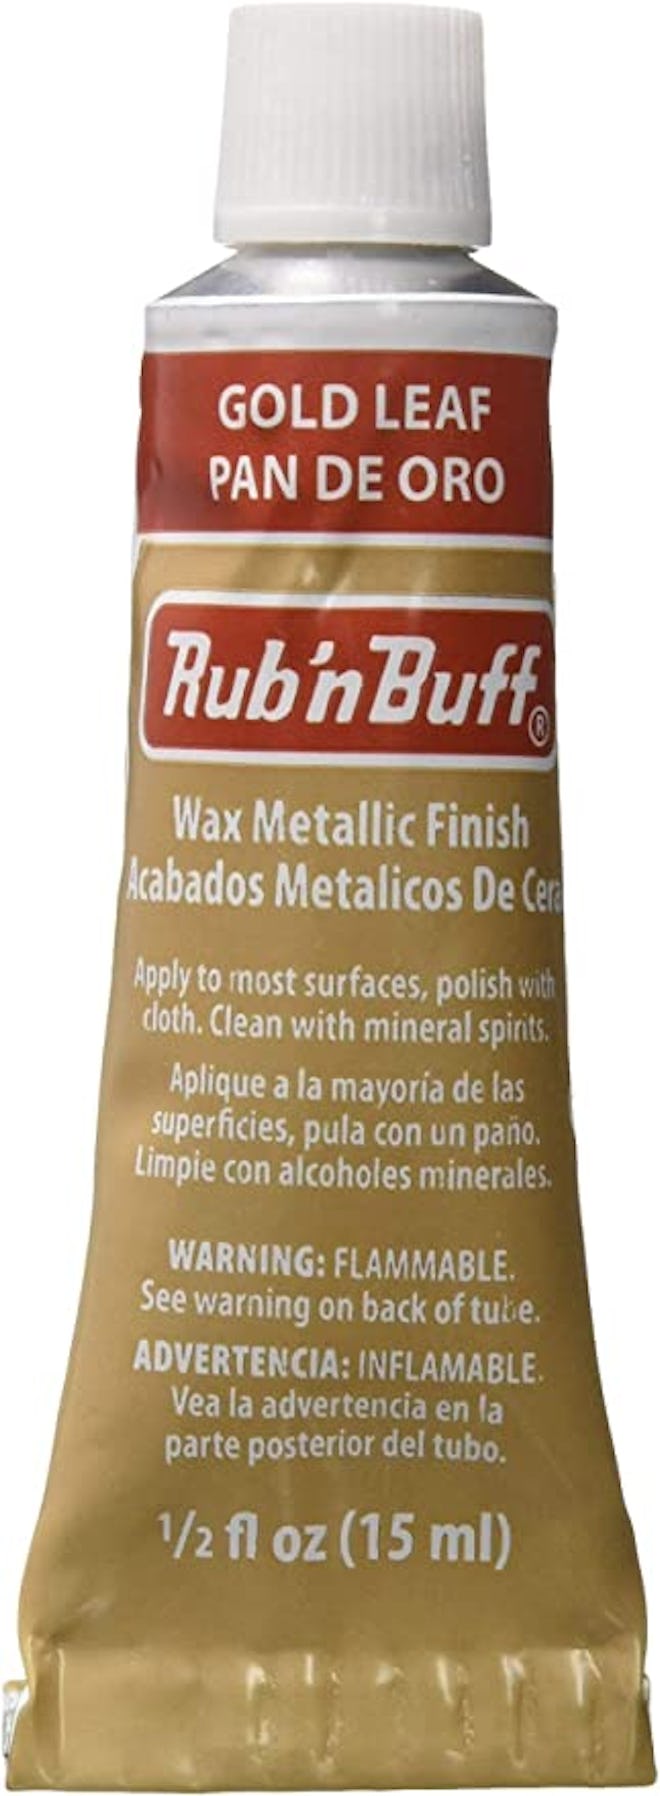 AMACO Rub 'n Buff Wax Metallic Finish